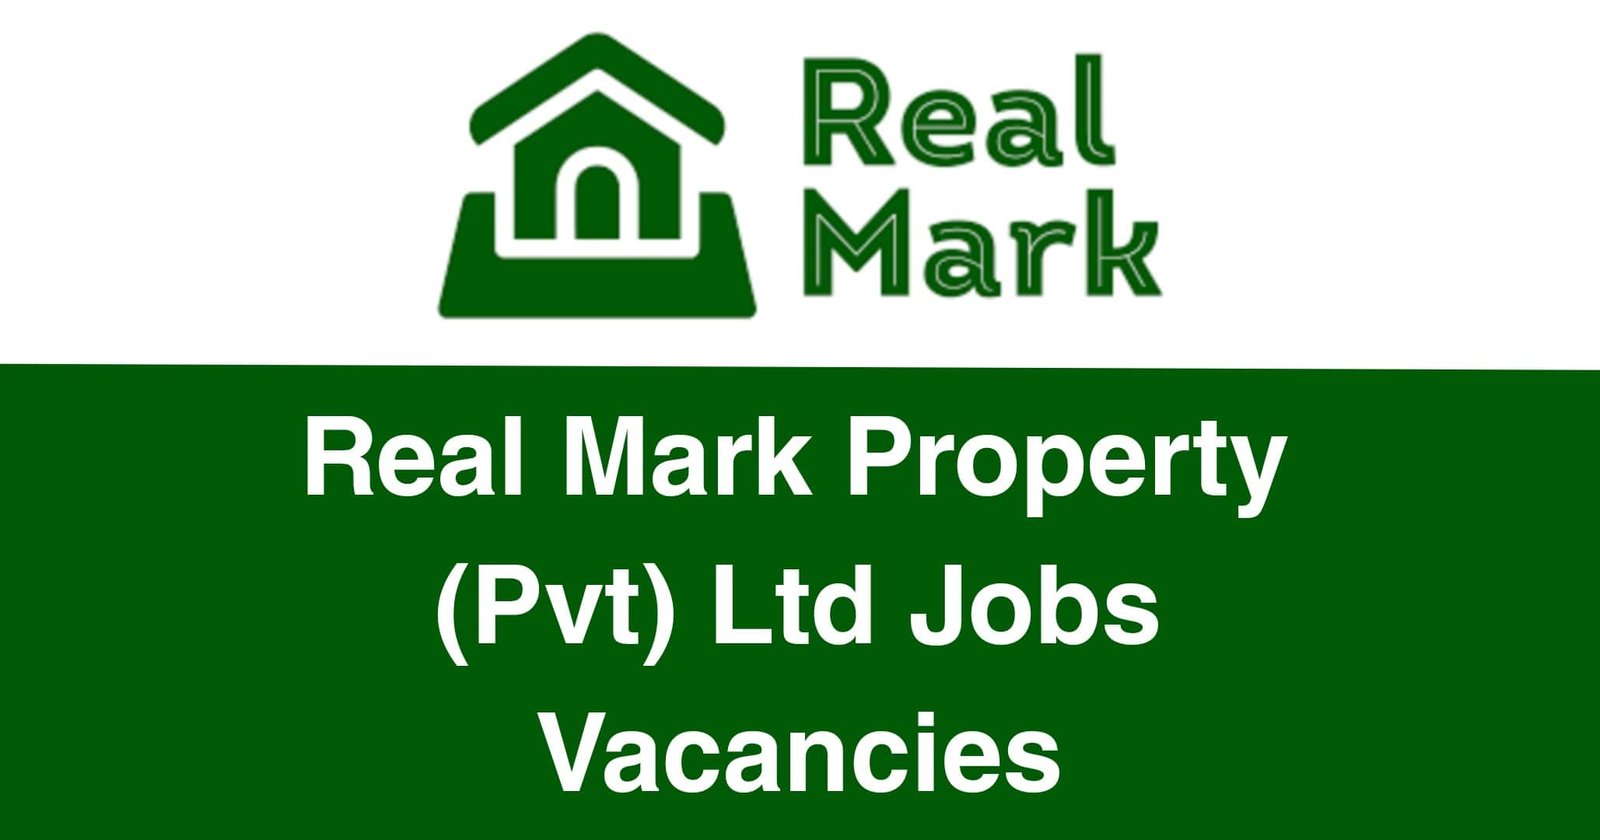 Real Mark Property (Pvt) Ltd Jobs Vacancies